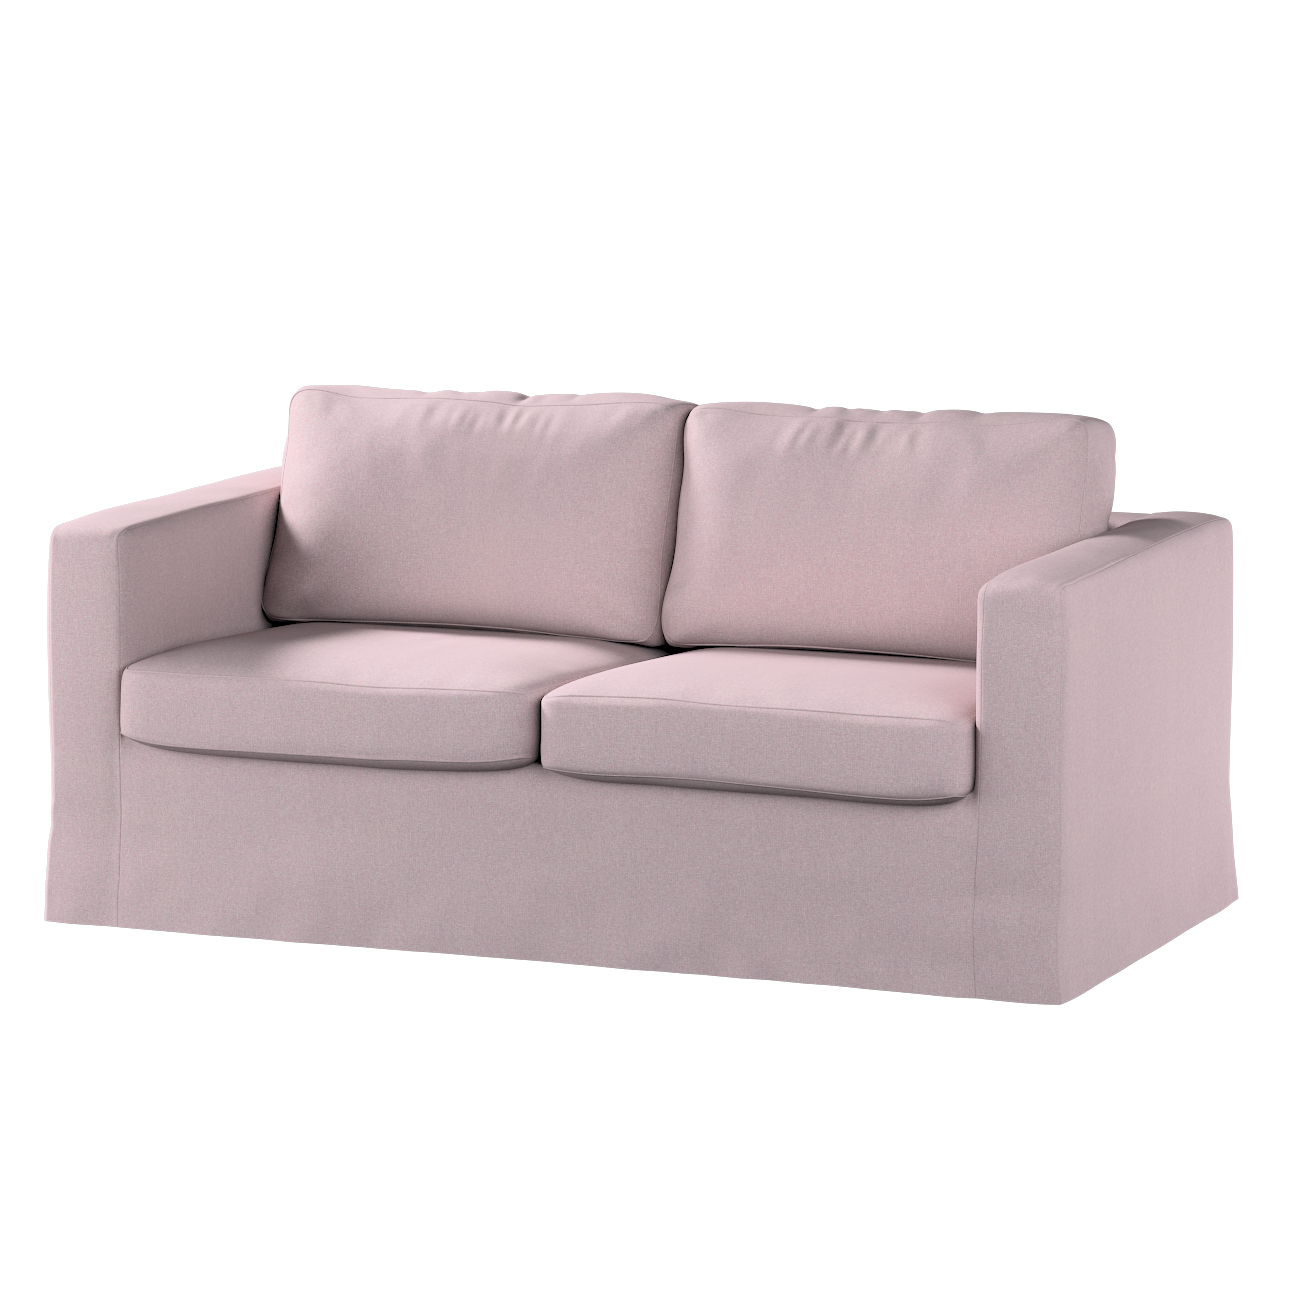 Bezug für Karlstad 2-Sitzer Sofa nicht ausklappbar, lang, rosa, Sofahusse, günstig online kaufen